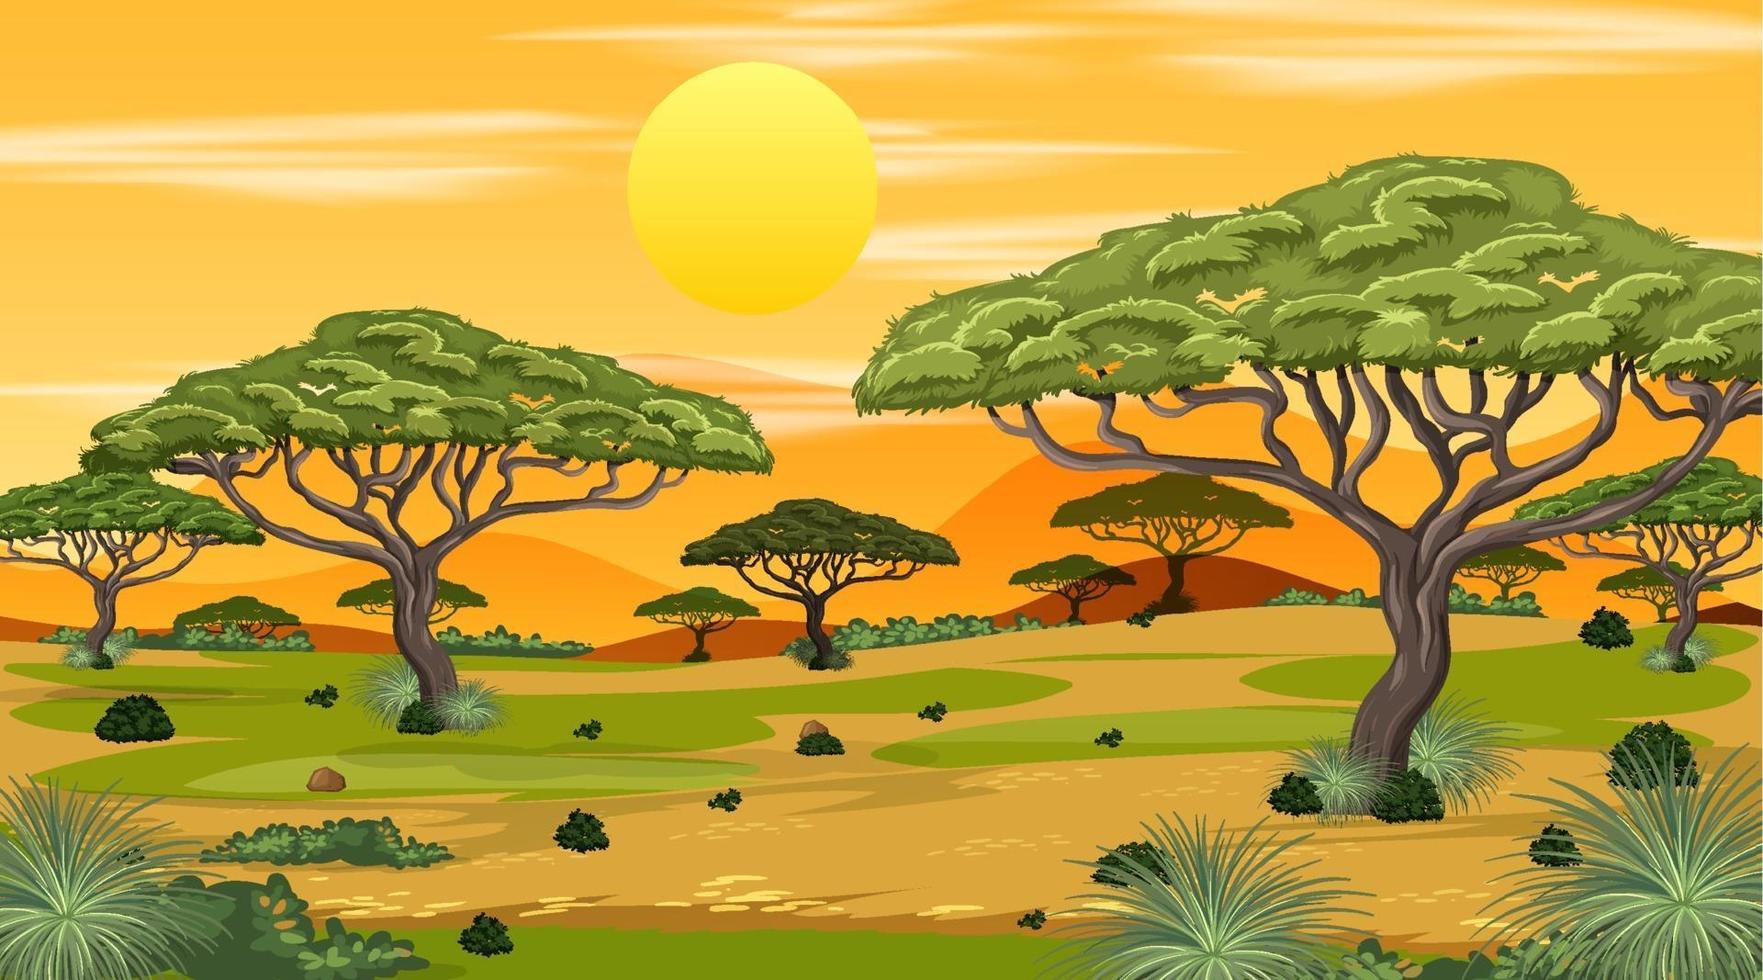 afrikanische Savannenwaldlandschaftsszene bei Sonnenuntergang vektor